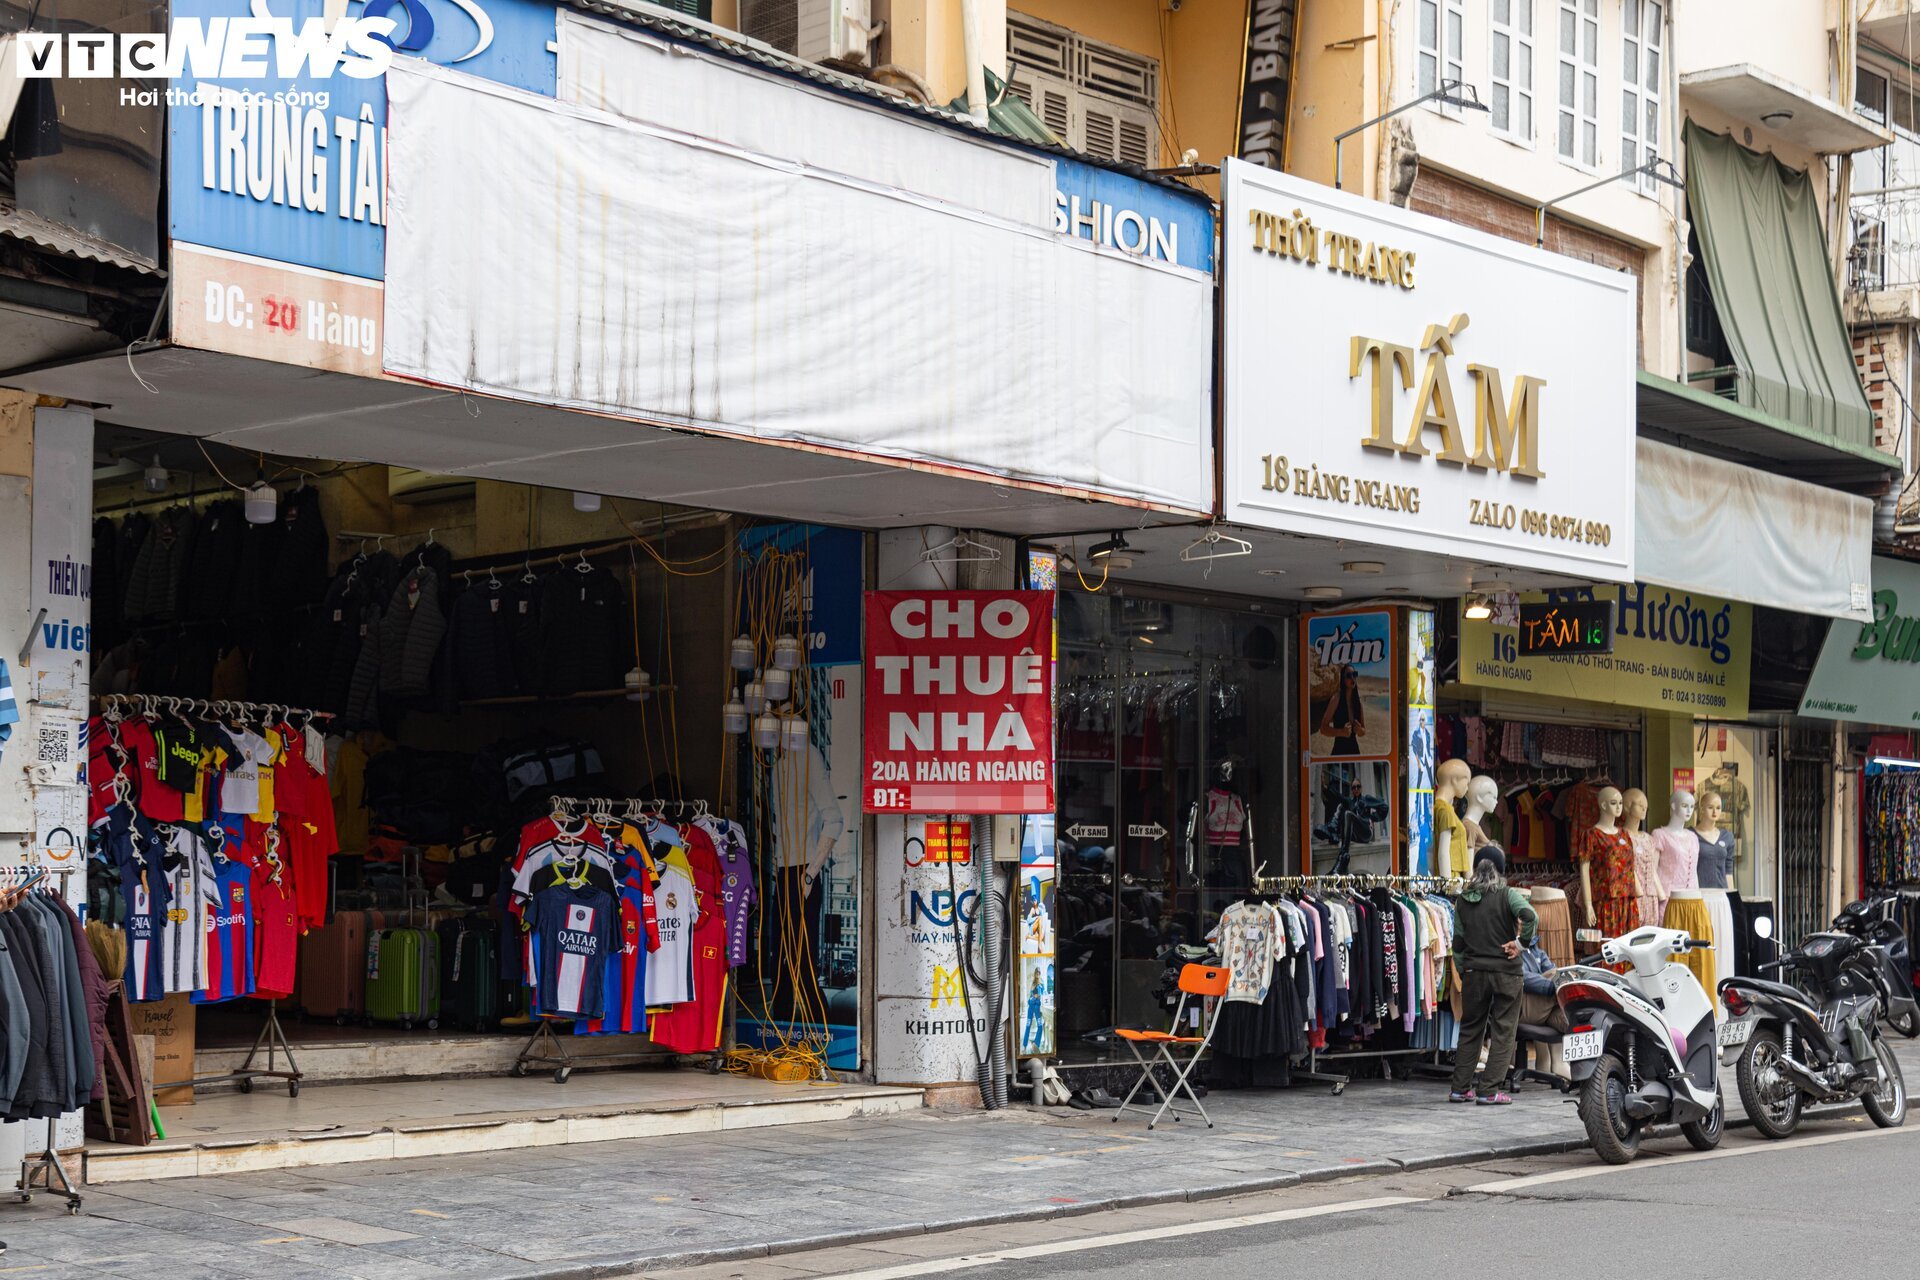 Nhiều cửa hàng giữa phố cổ Hà Nội im lìm đóng cửa, chủ nhà ngóng khách thuê - Ảnh 3.